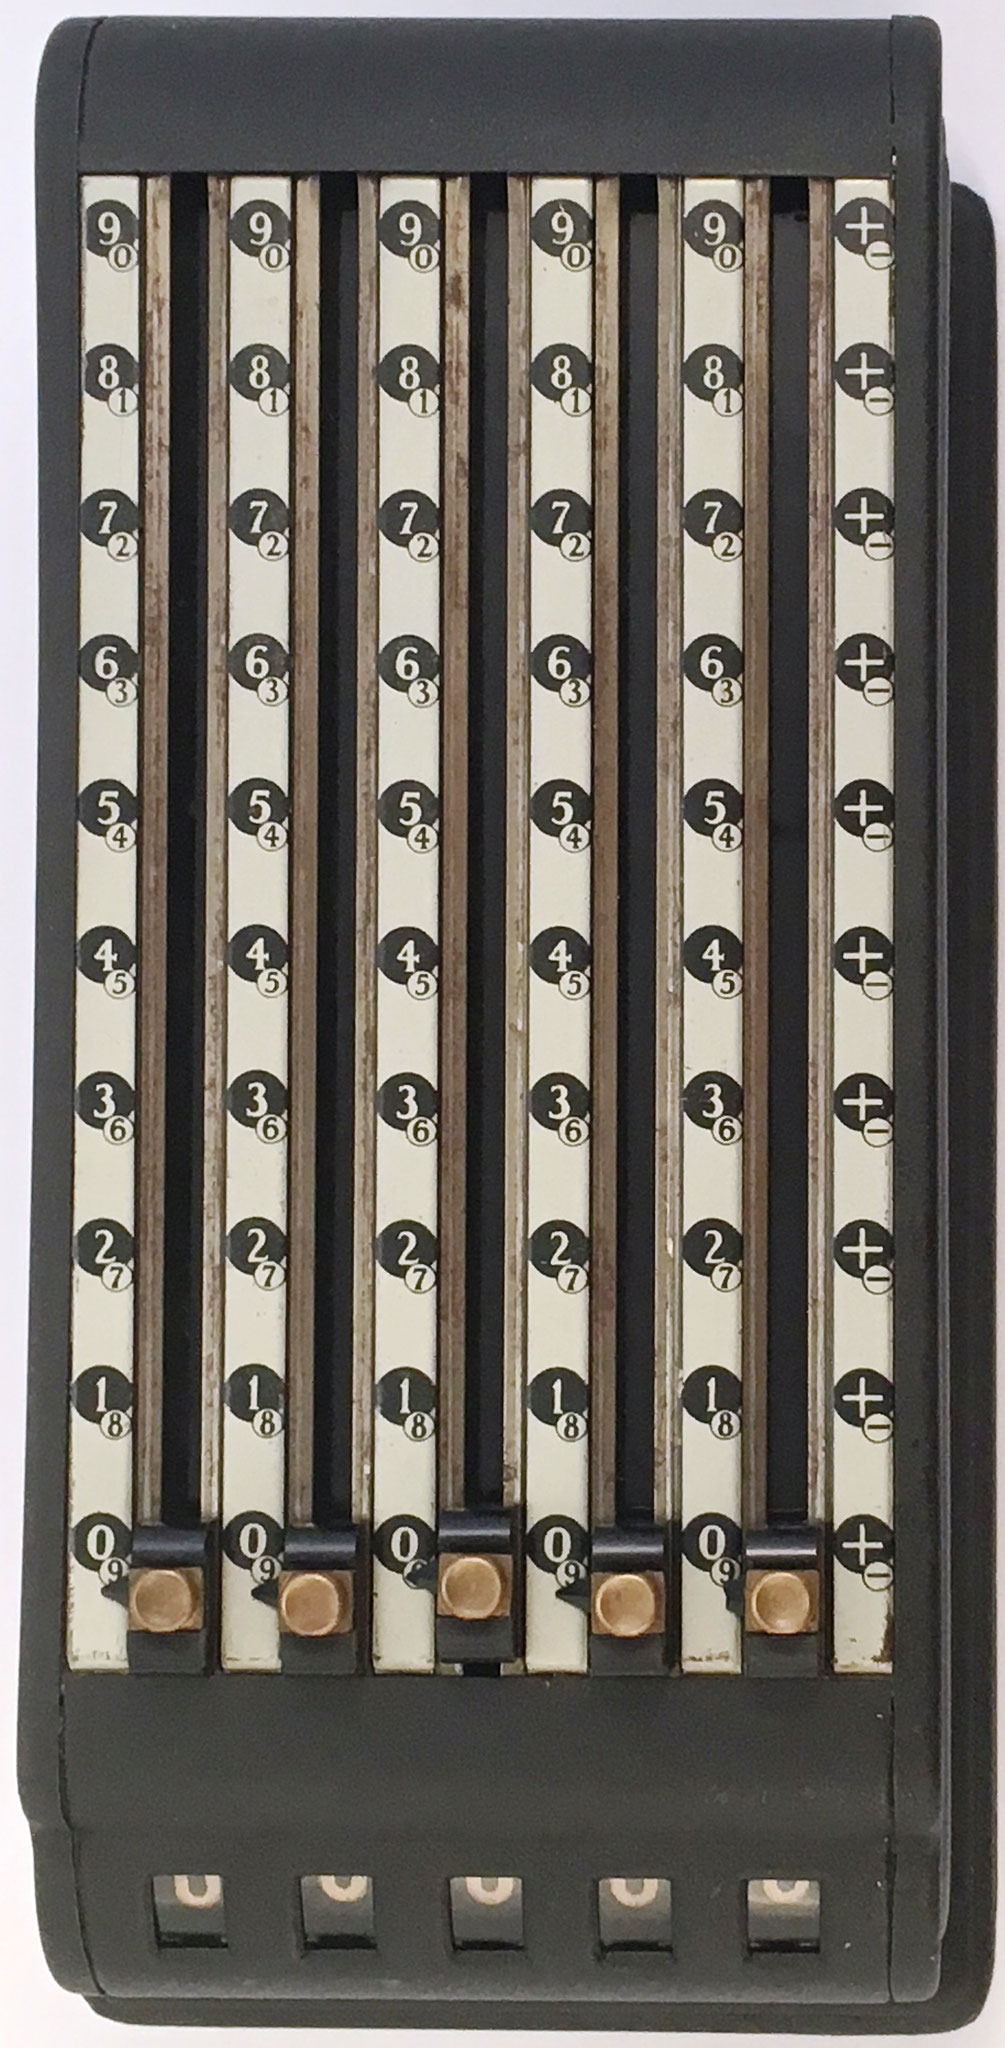 Sumadora ADD-O-MATIC, hecha por Allied Manufacturing Co. en Chicago (USA), año 1937, 29x13x12 cm